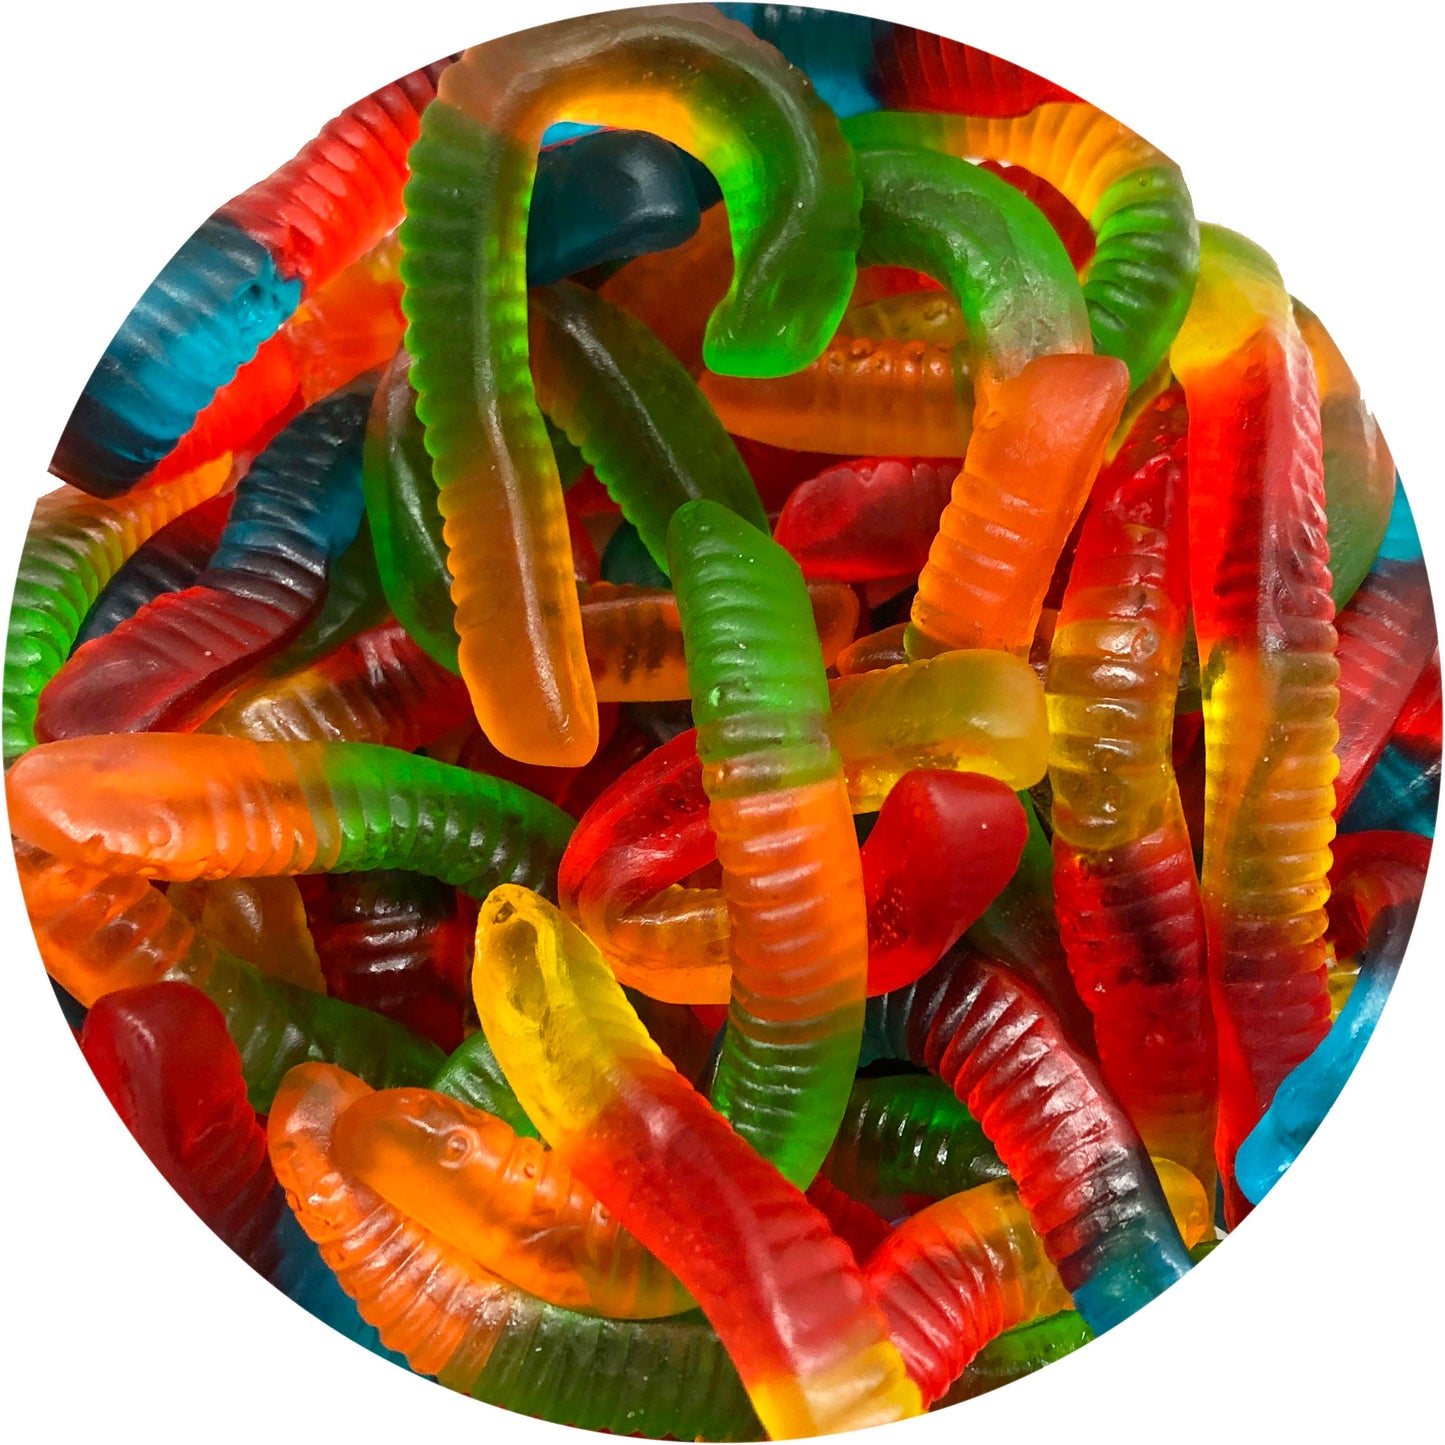 Gummy Worms (Israel)